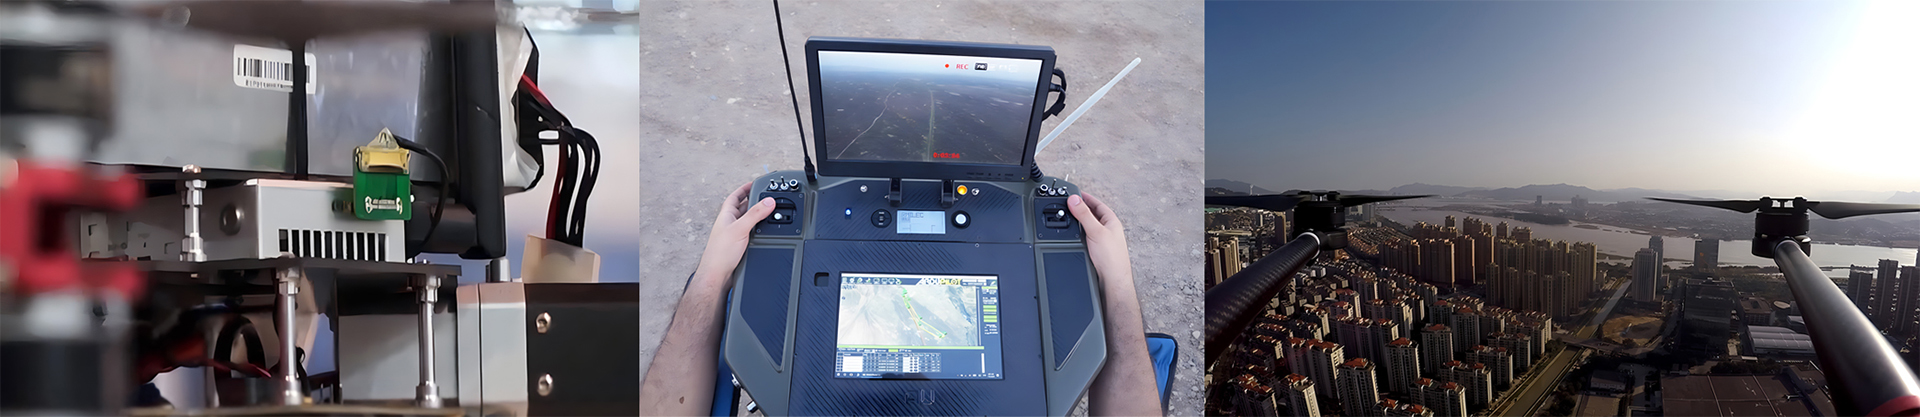 FIP2410-10km-UAV-Digital-video-sender-application-scenarios